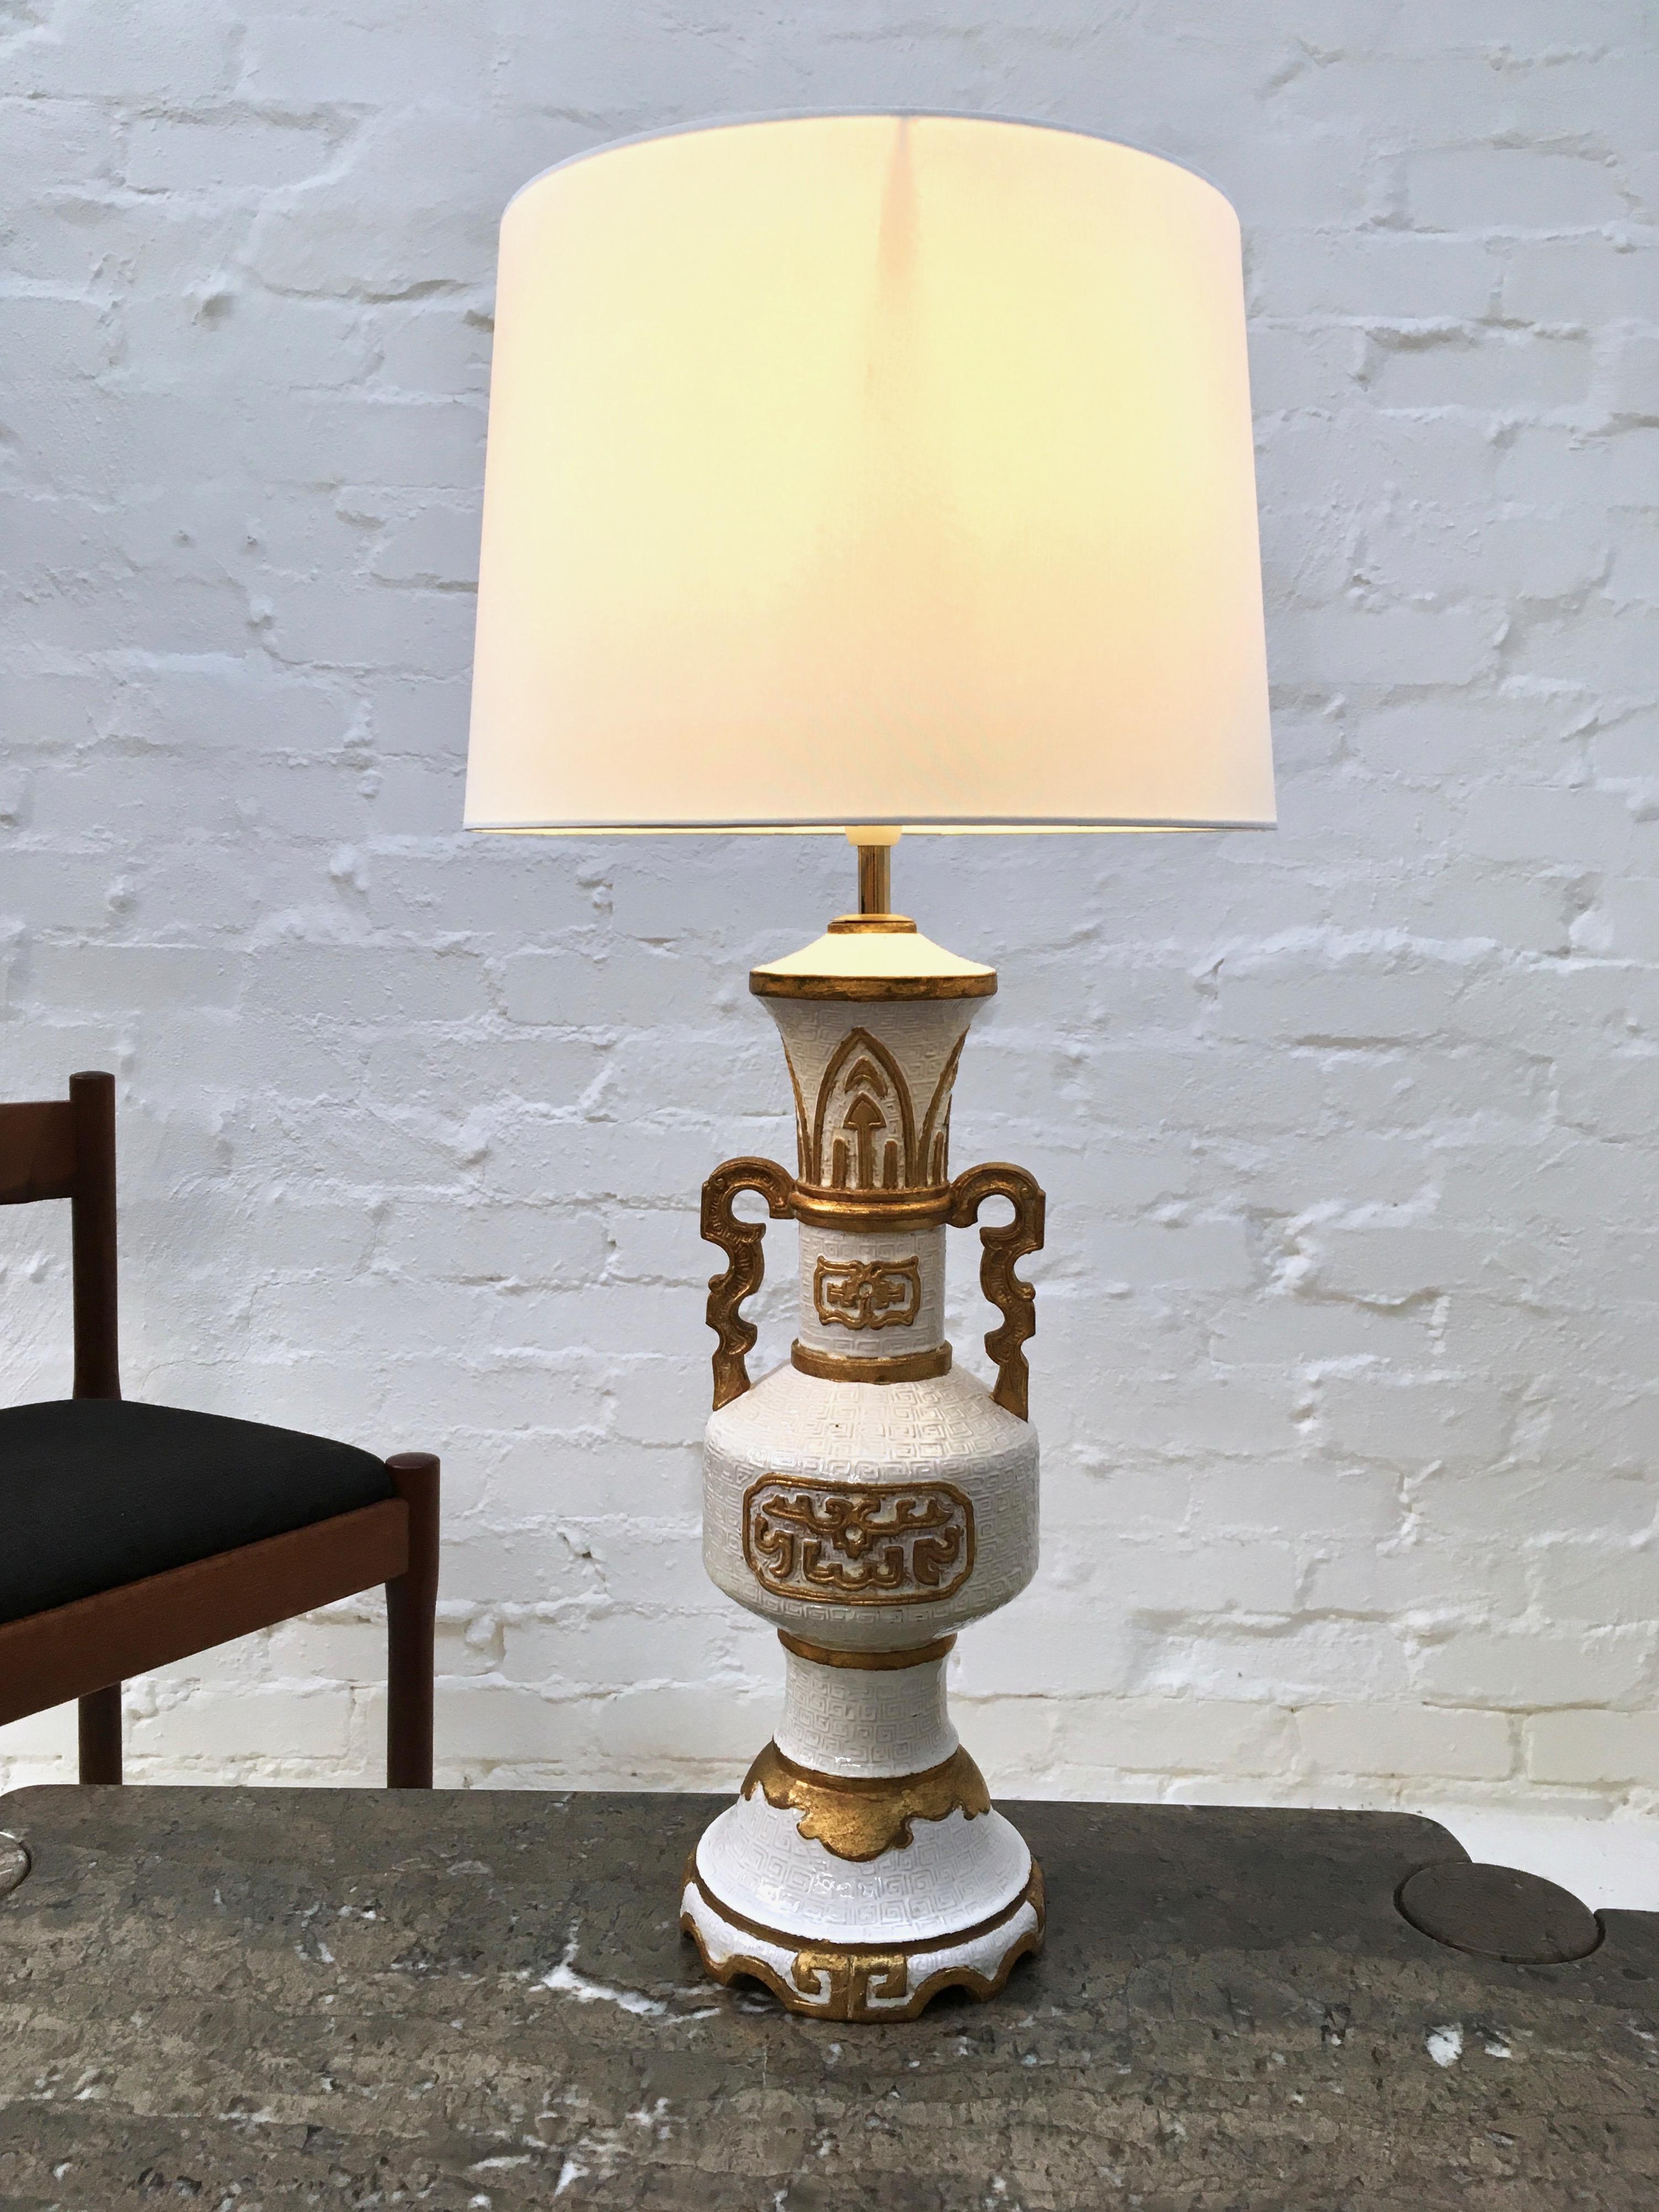 Eine große Hollywood-Regency-Lampe mit stilisiertem Dekor, die bis zur Oberkante des Schirms 32 Zoll hoch ist. In Anlehnung an den dekorativen Stil der 1940er- bis 1950er-Jahre, in dem große Lampen auf den heimischen Markt kamen, ist diese Leuchte